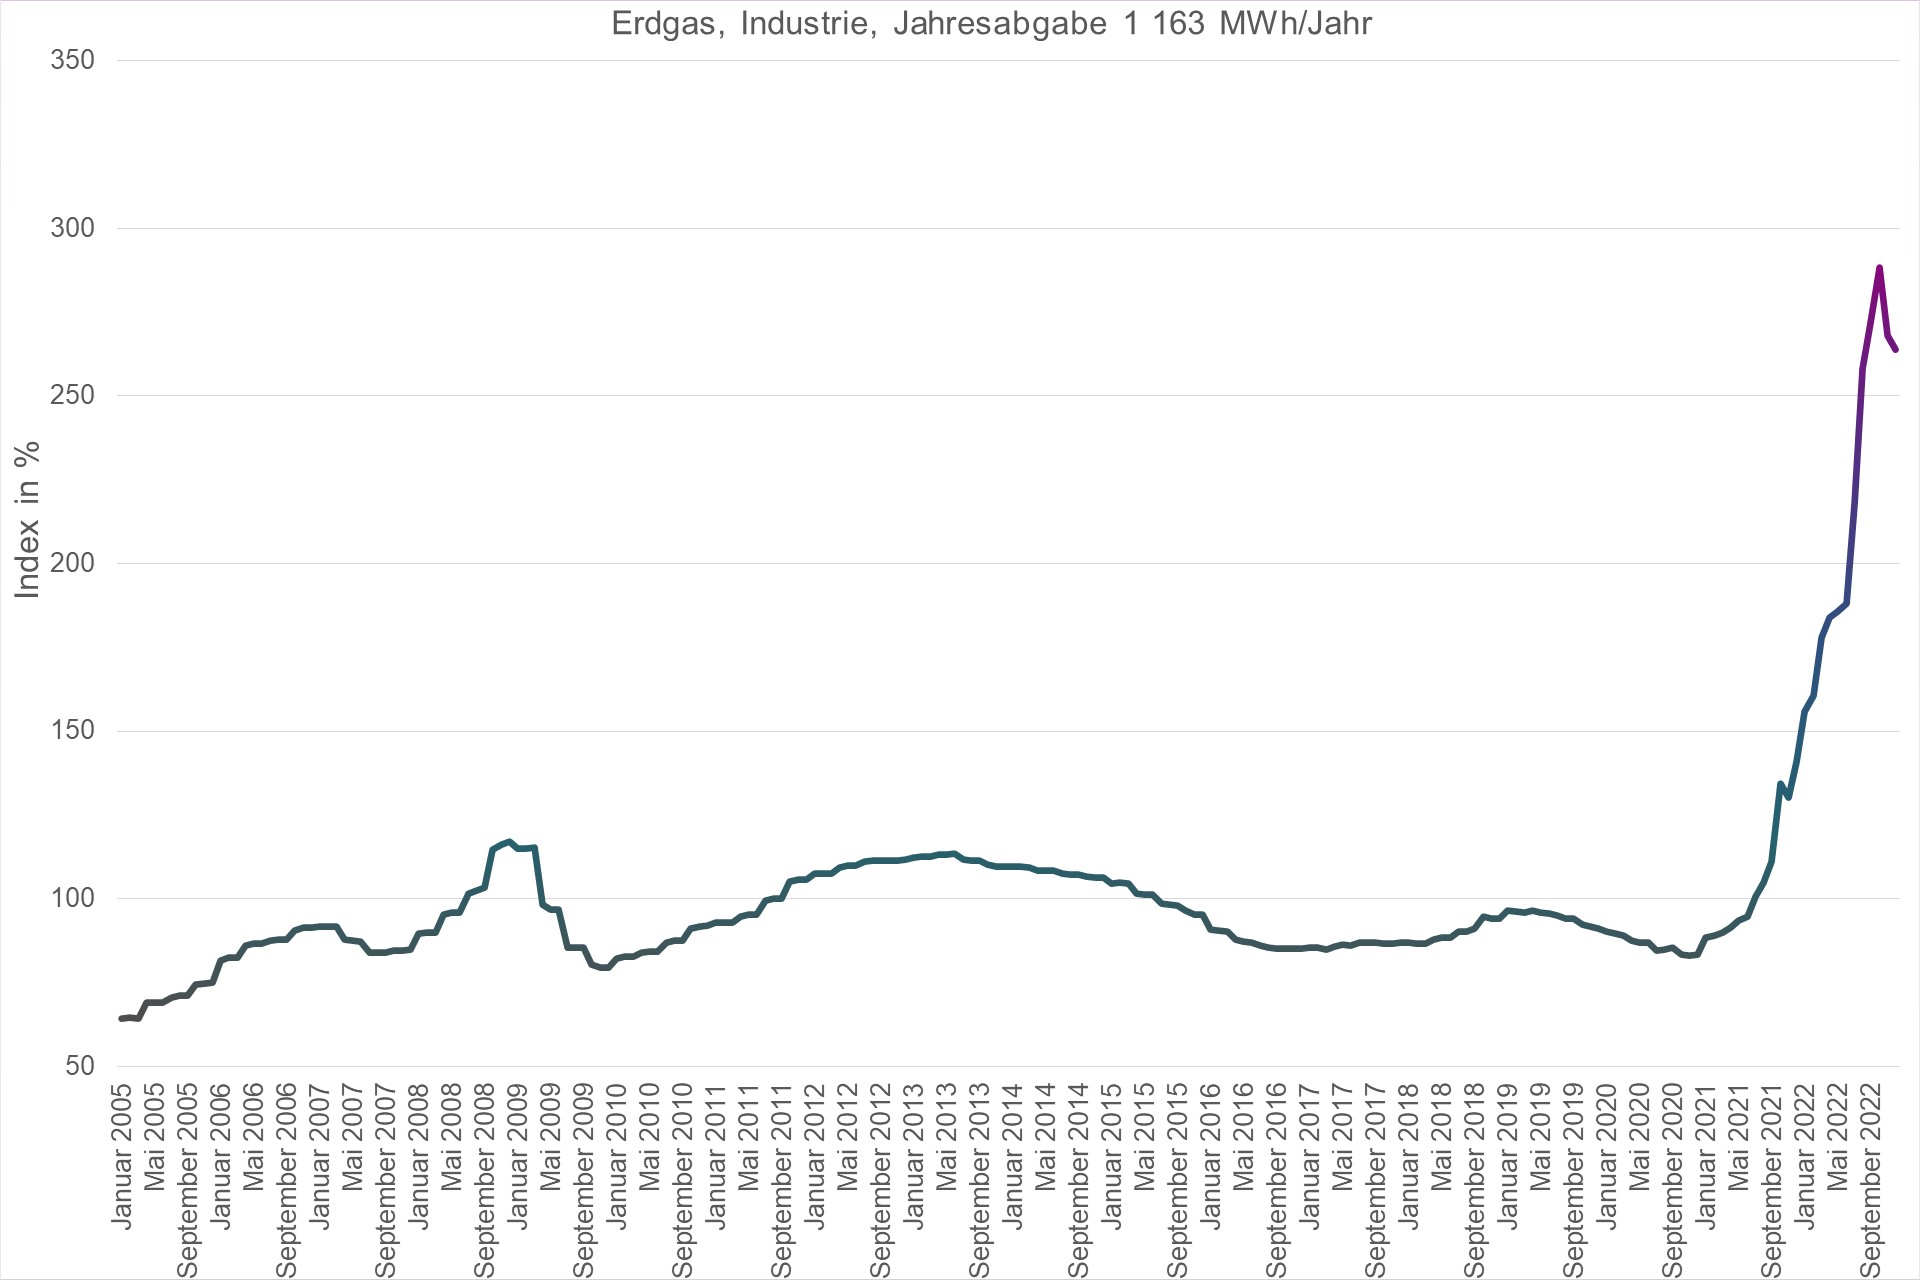 Grafik Preisindex Erdgas, Industrie, Jahresabgabe 1163 MWh/Jahr